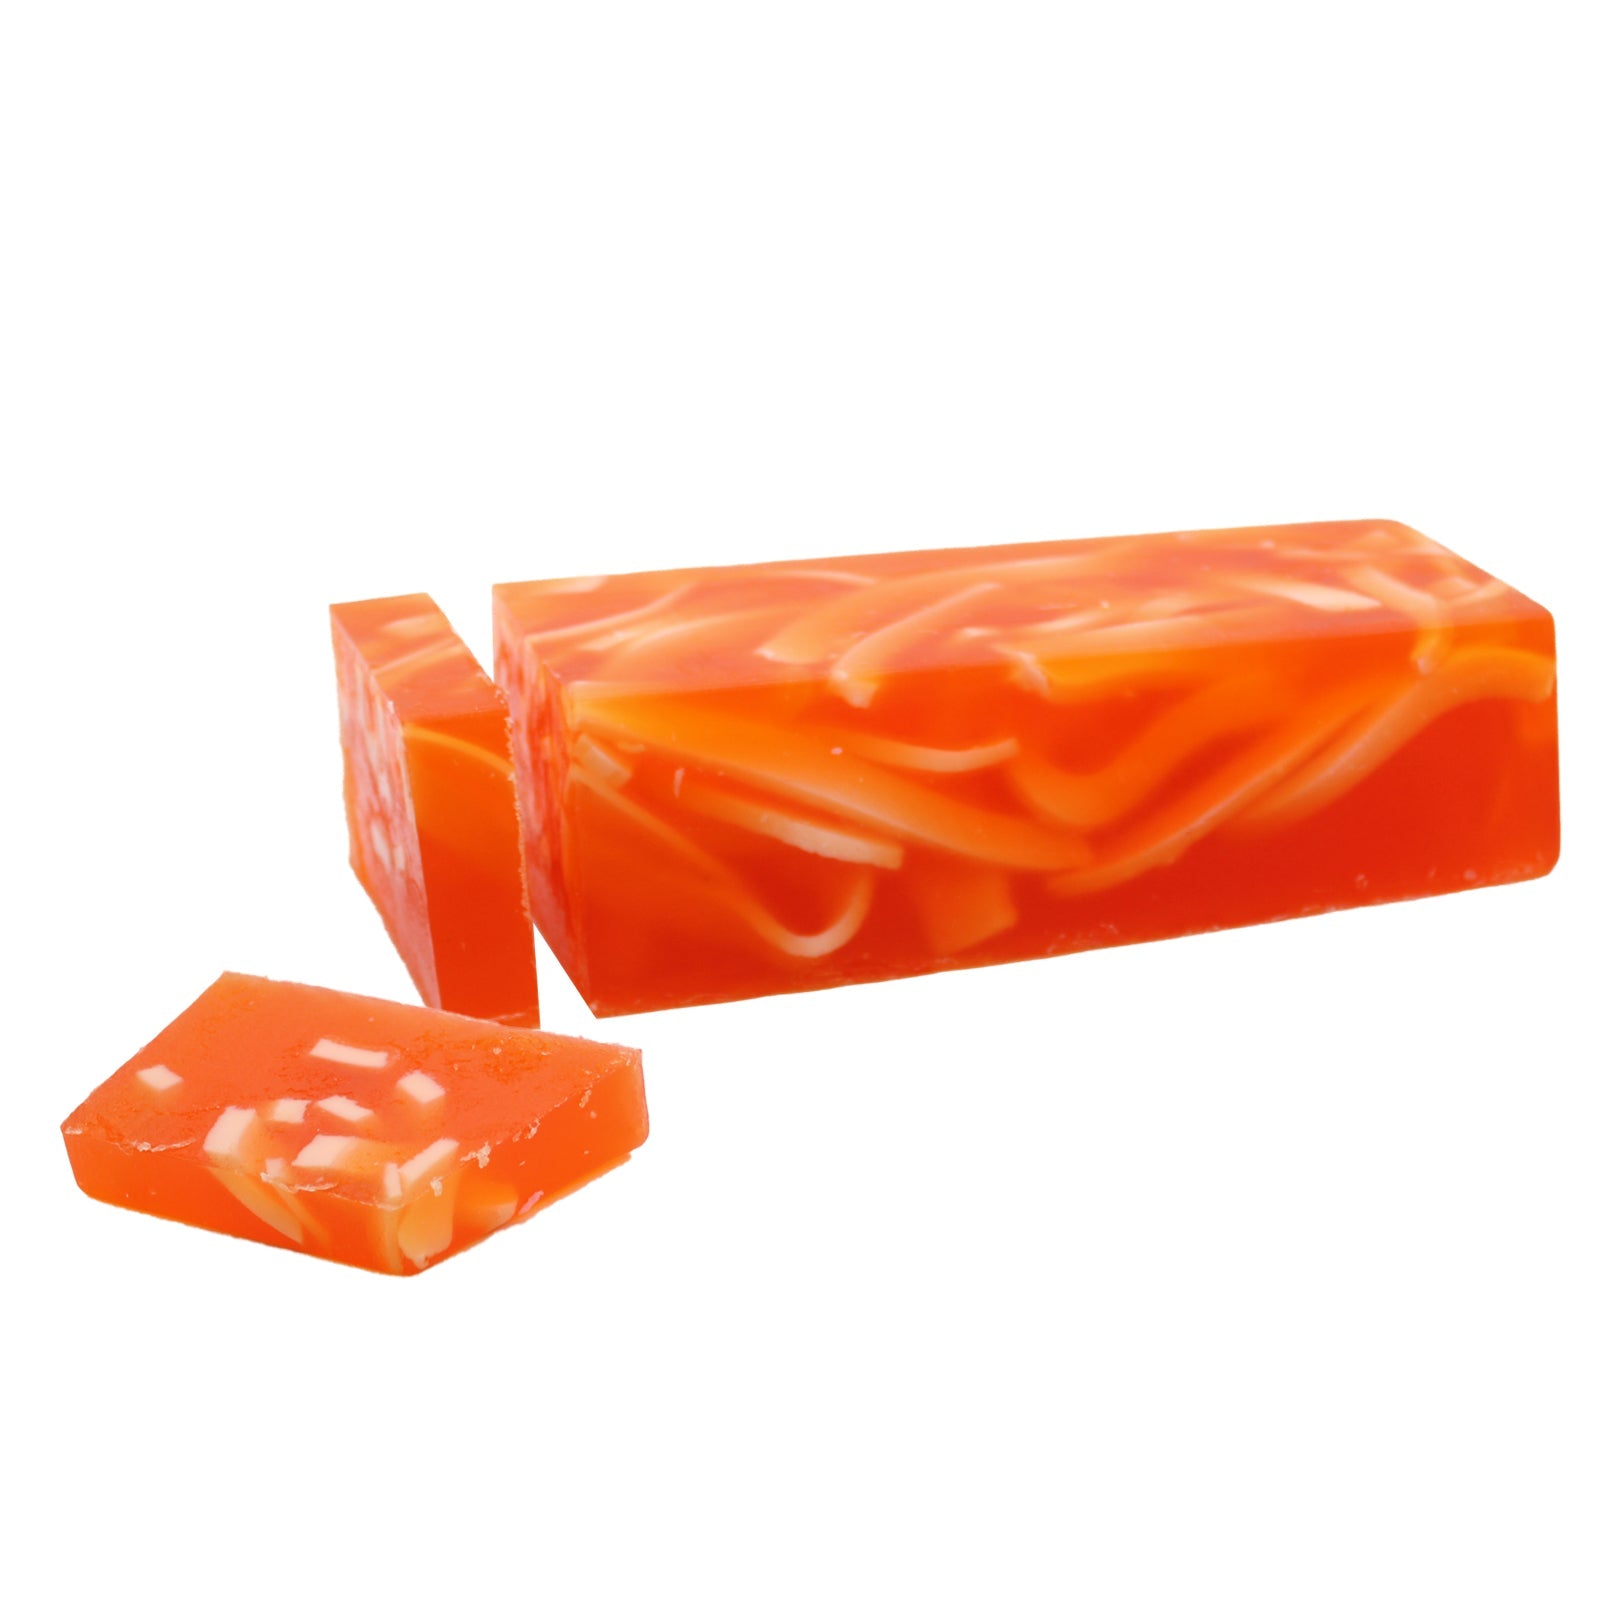 View Orange Zest Soap Loaf information